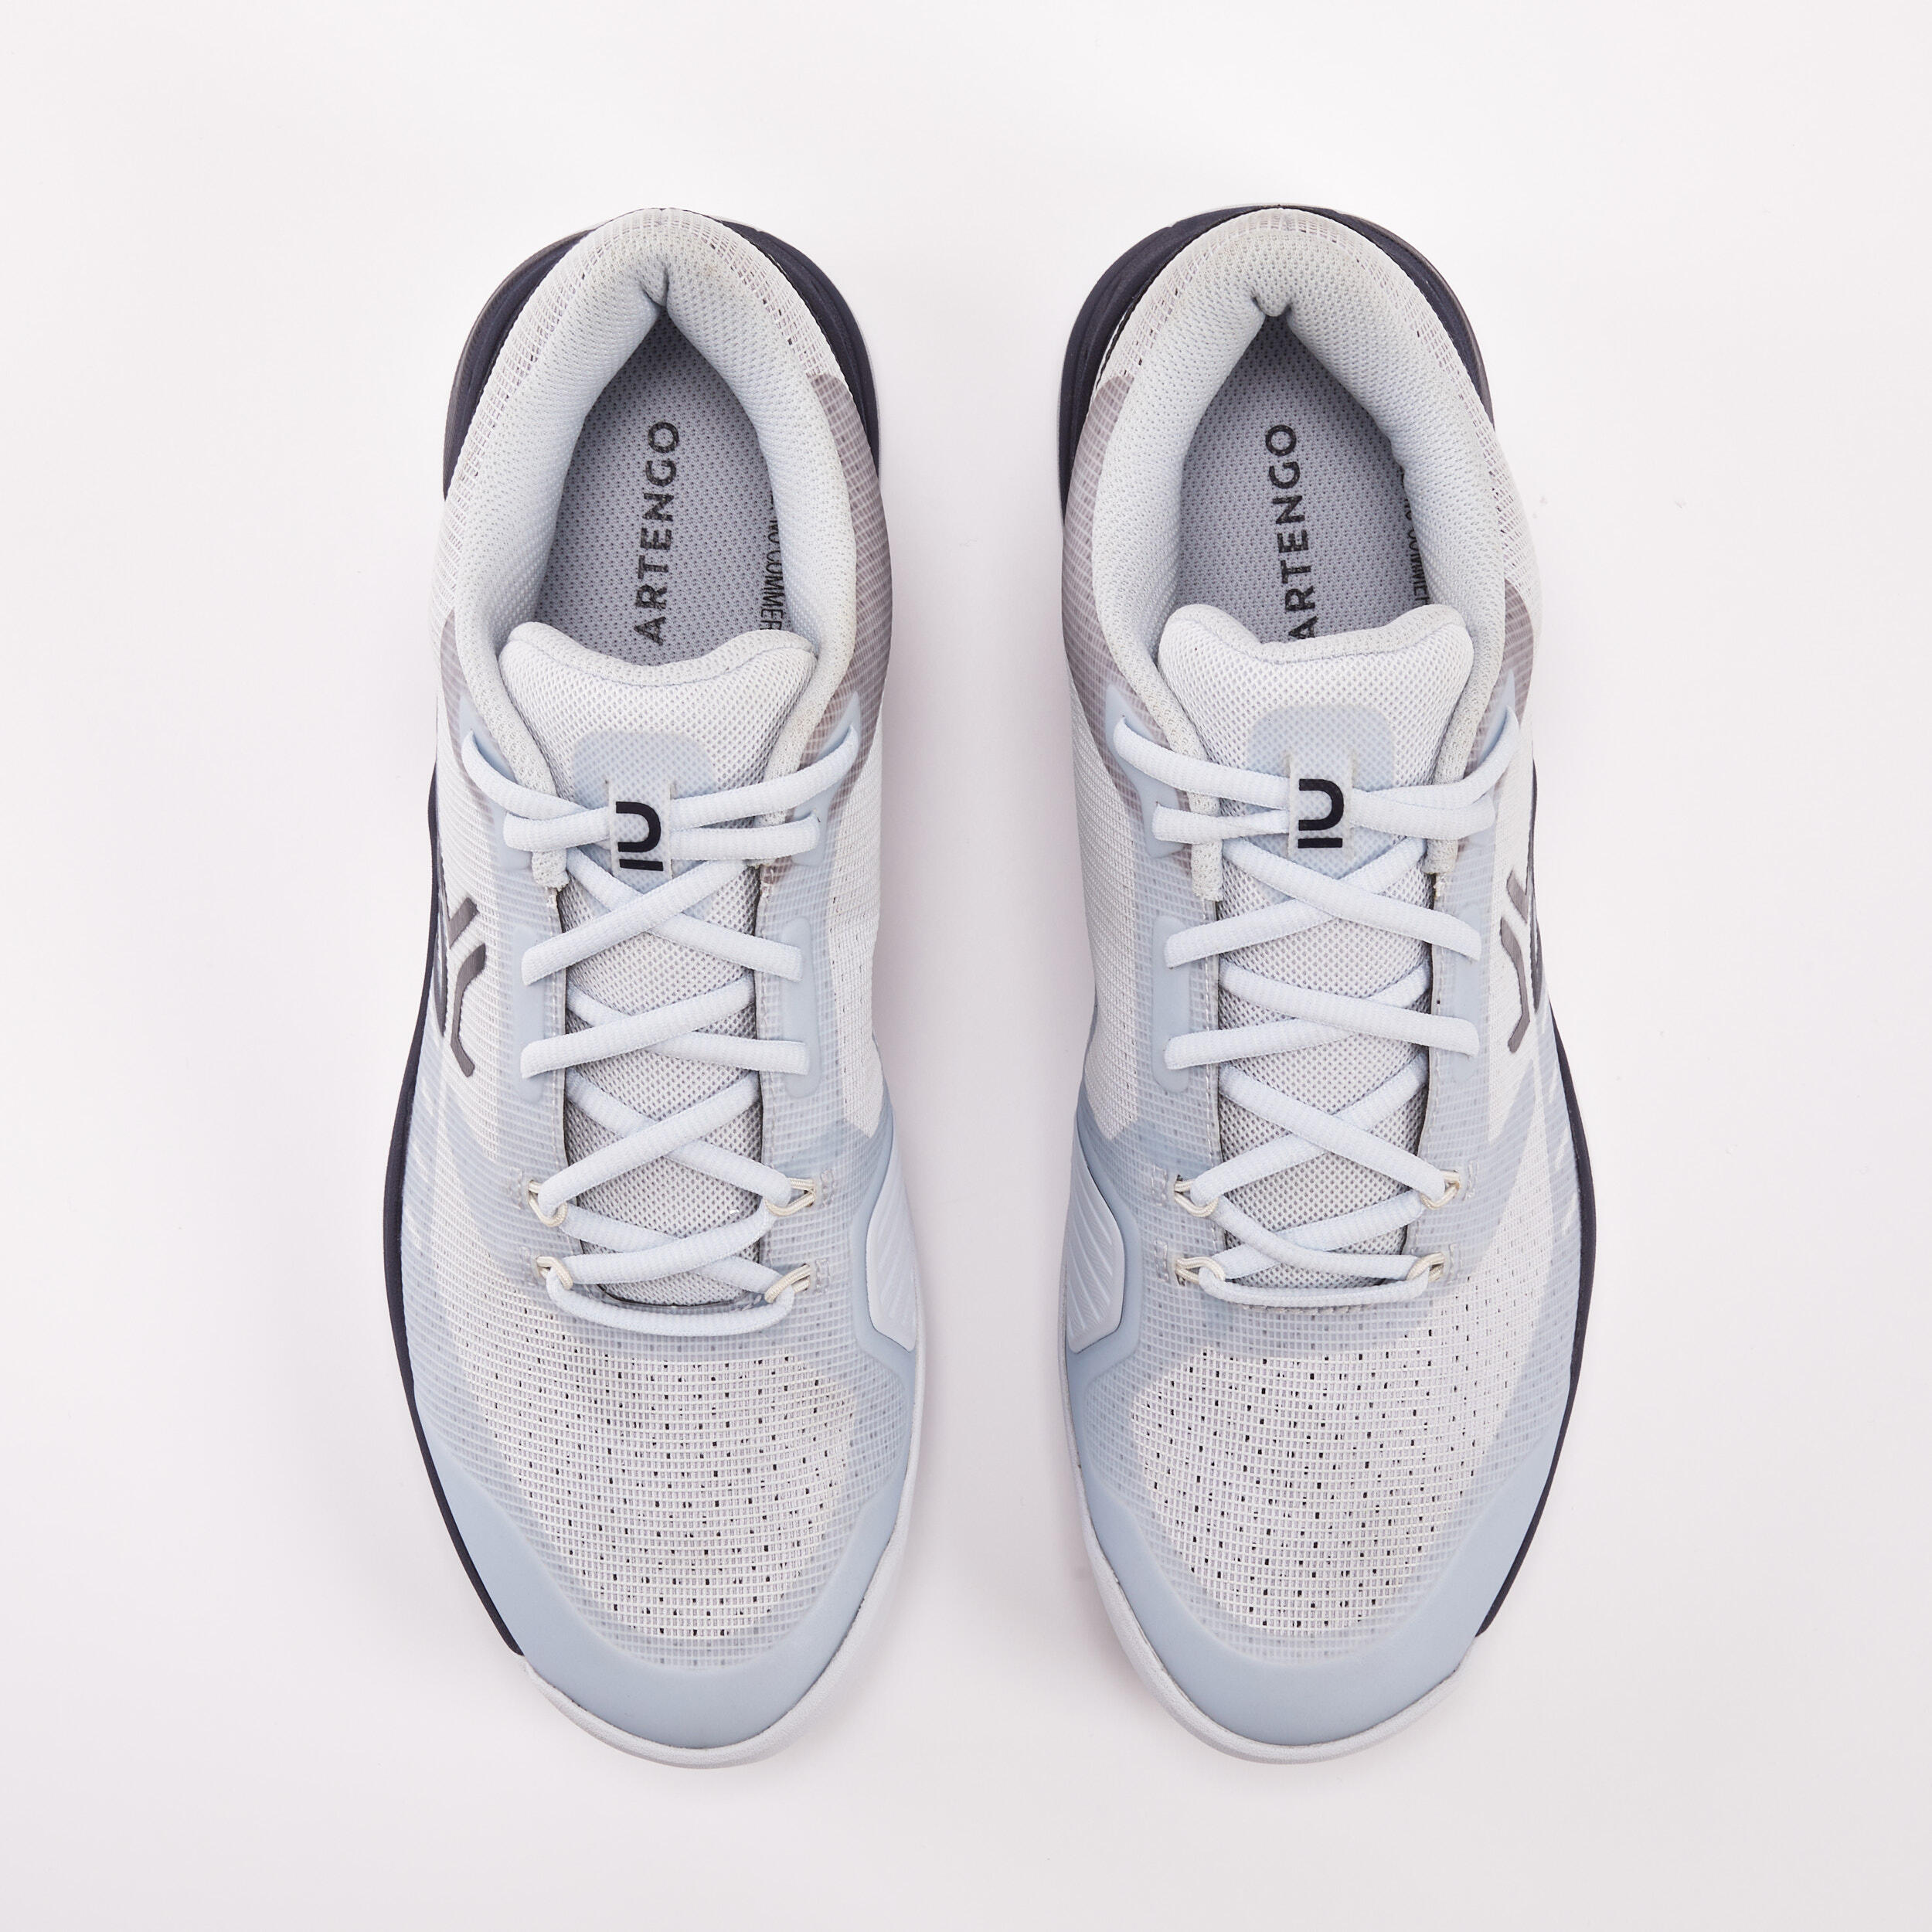 Men's Multicourt Tennis Shoes - Light Grey/Blue 6/9